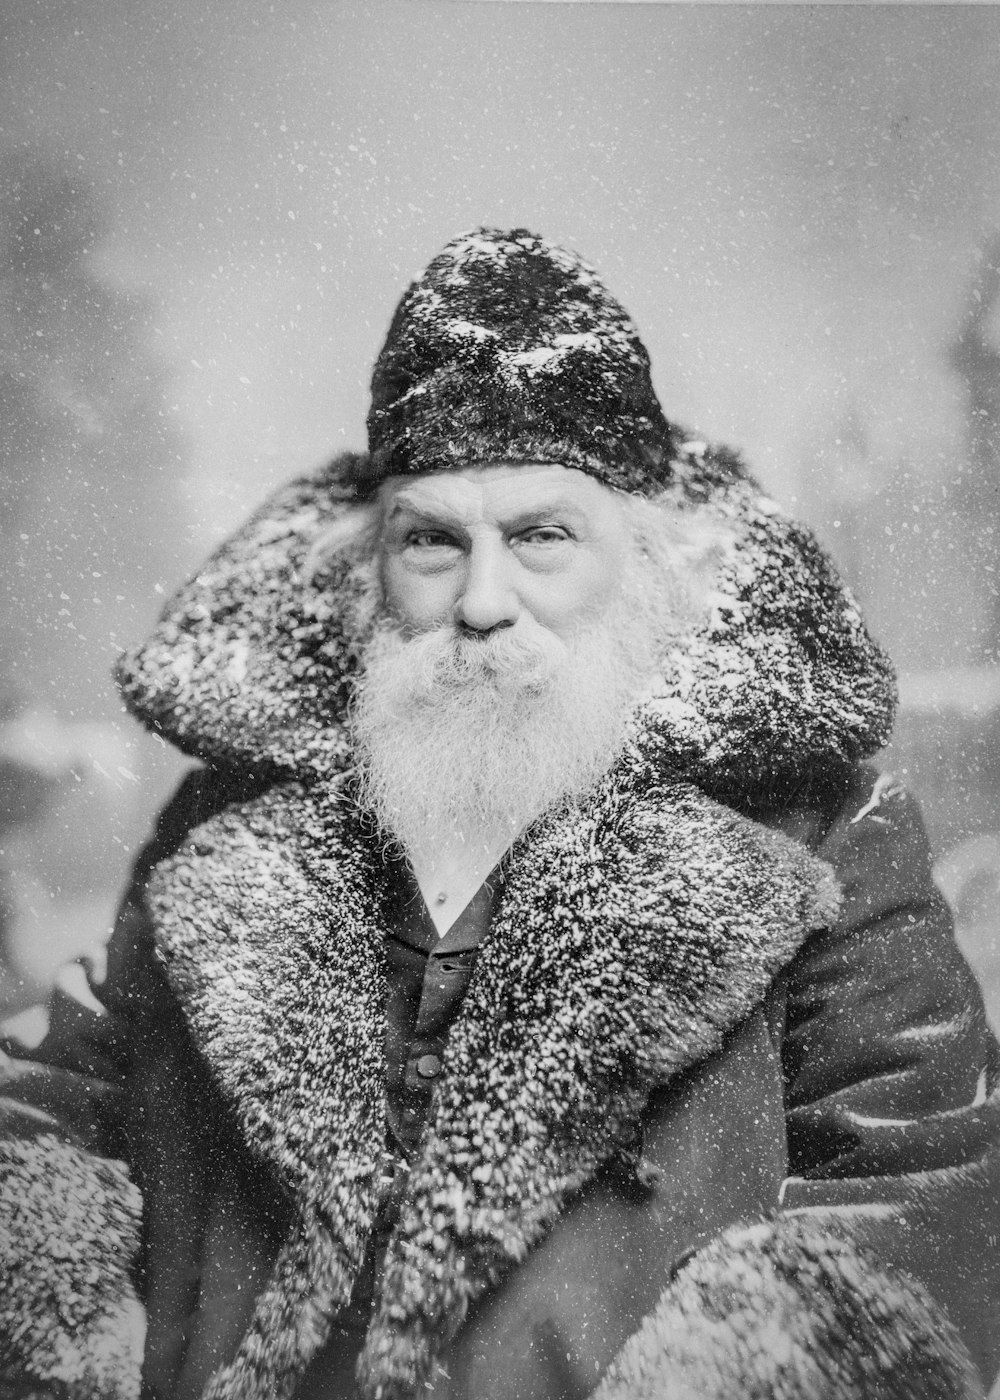 Une vieille photo d’un homme en manteau de fourrure